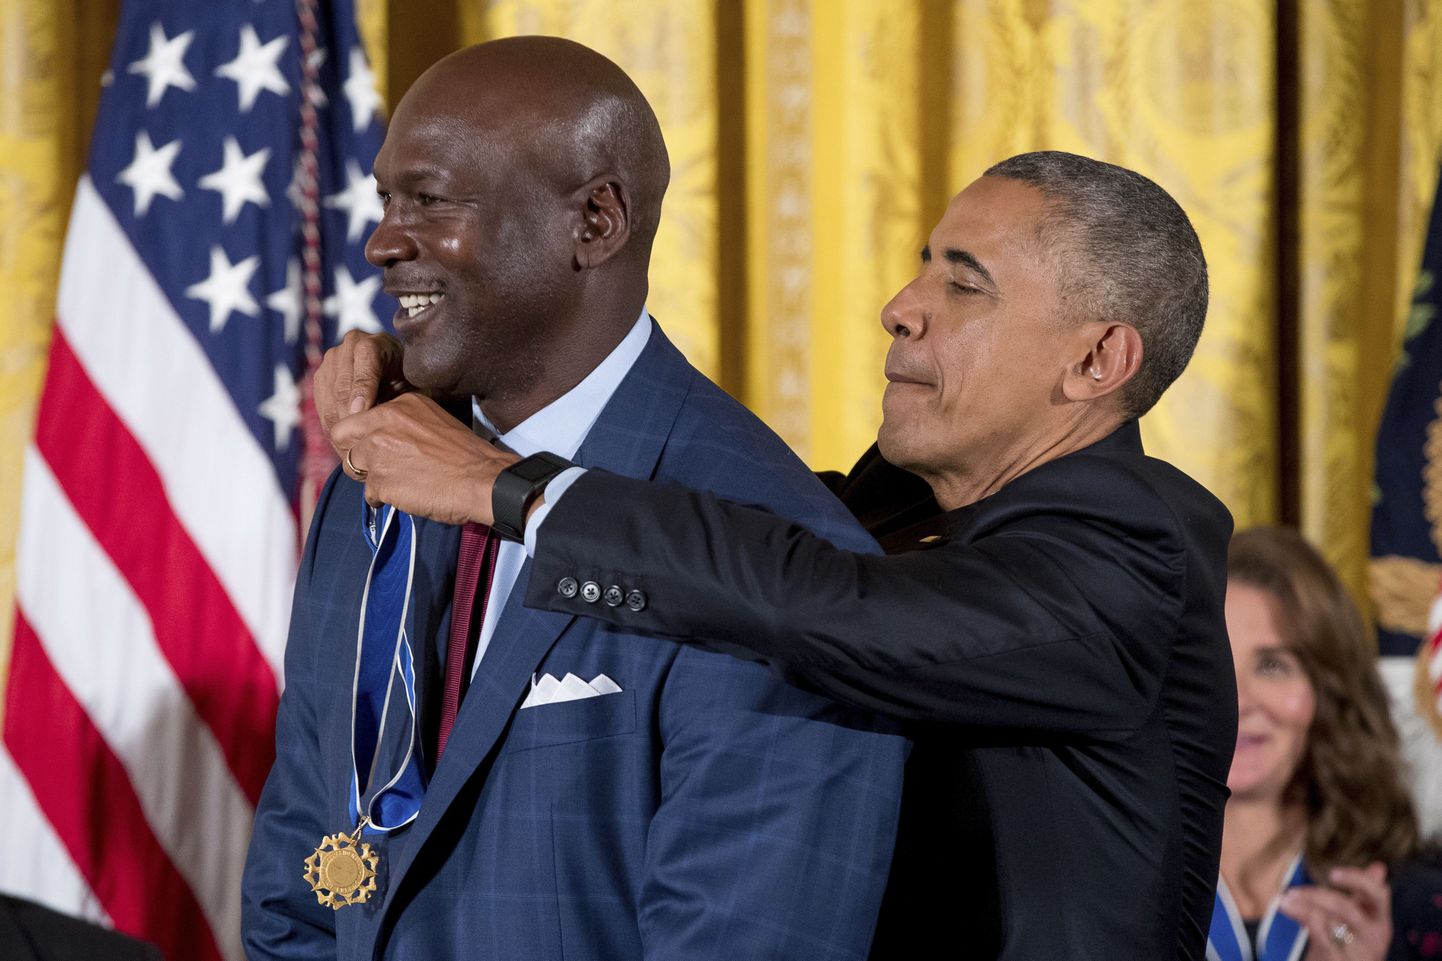 Presidendi vabaduse medali sai kaela NBA korvpalli legend Michael Jordan.